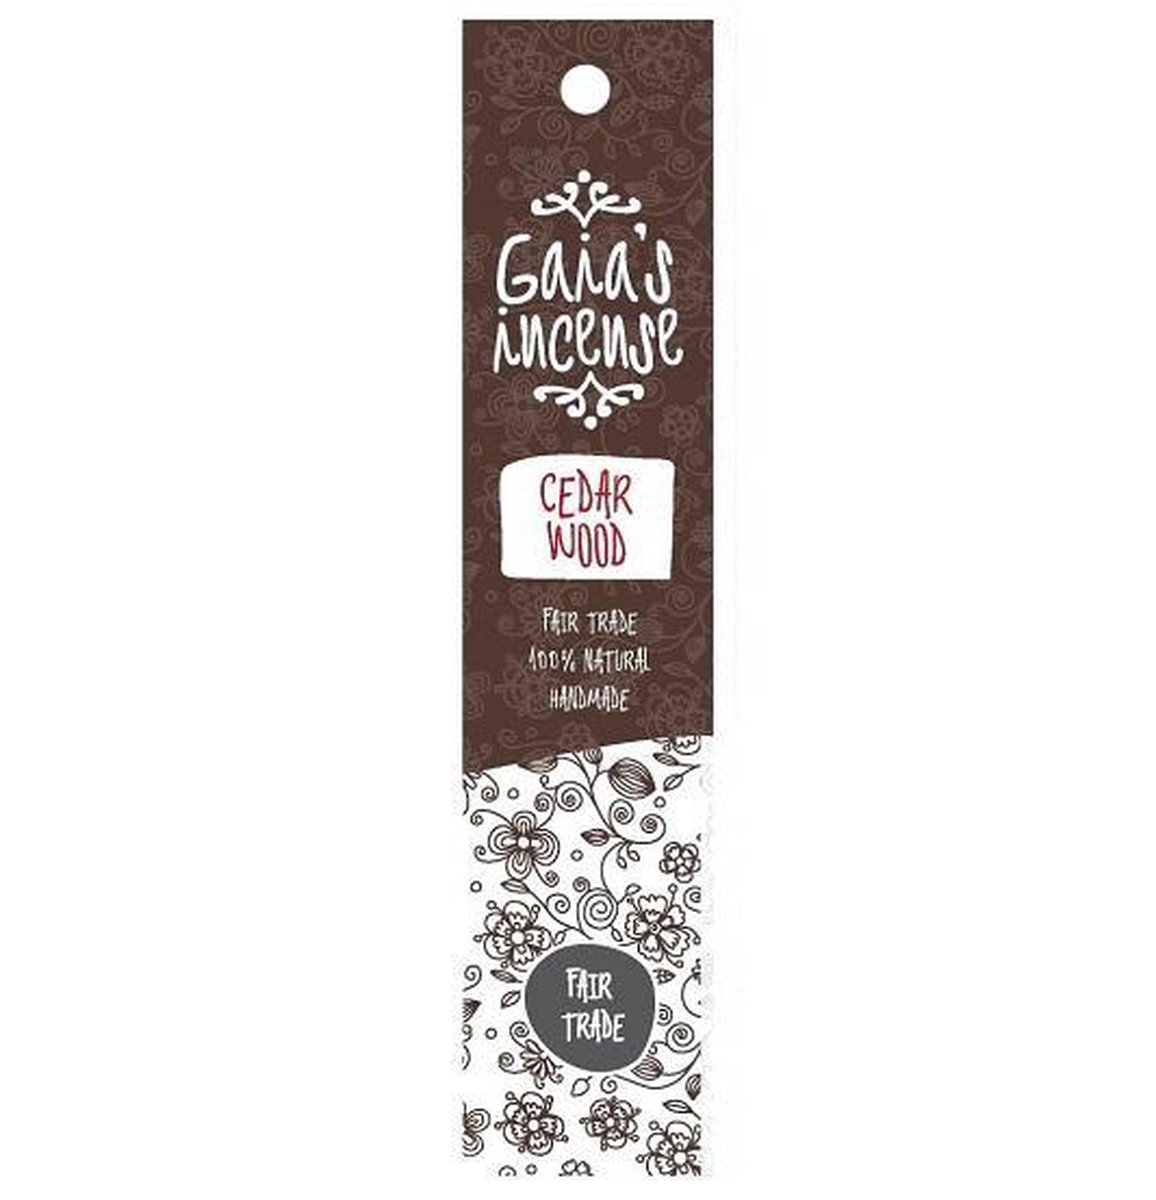 Gaia’s Incense Fare Trade Wierook Cedar Wood